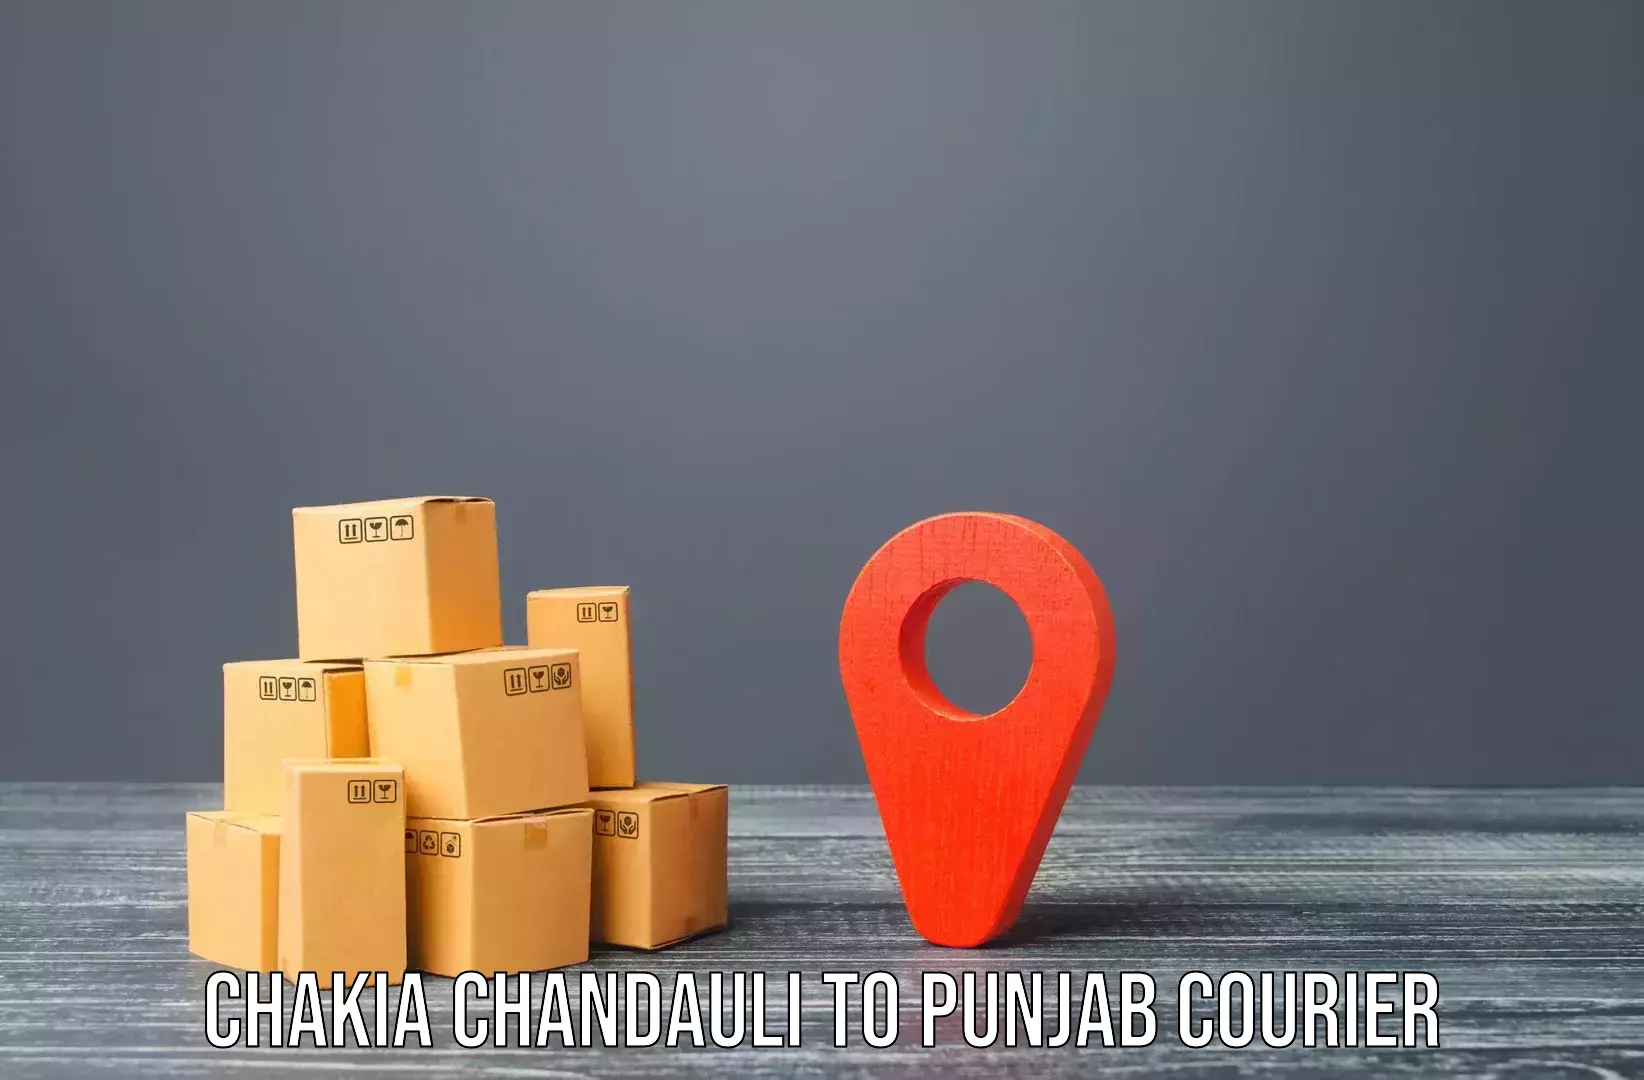 Reliable movers Chakia Chandauli to Anandpur Sahib